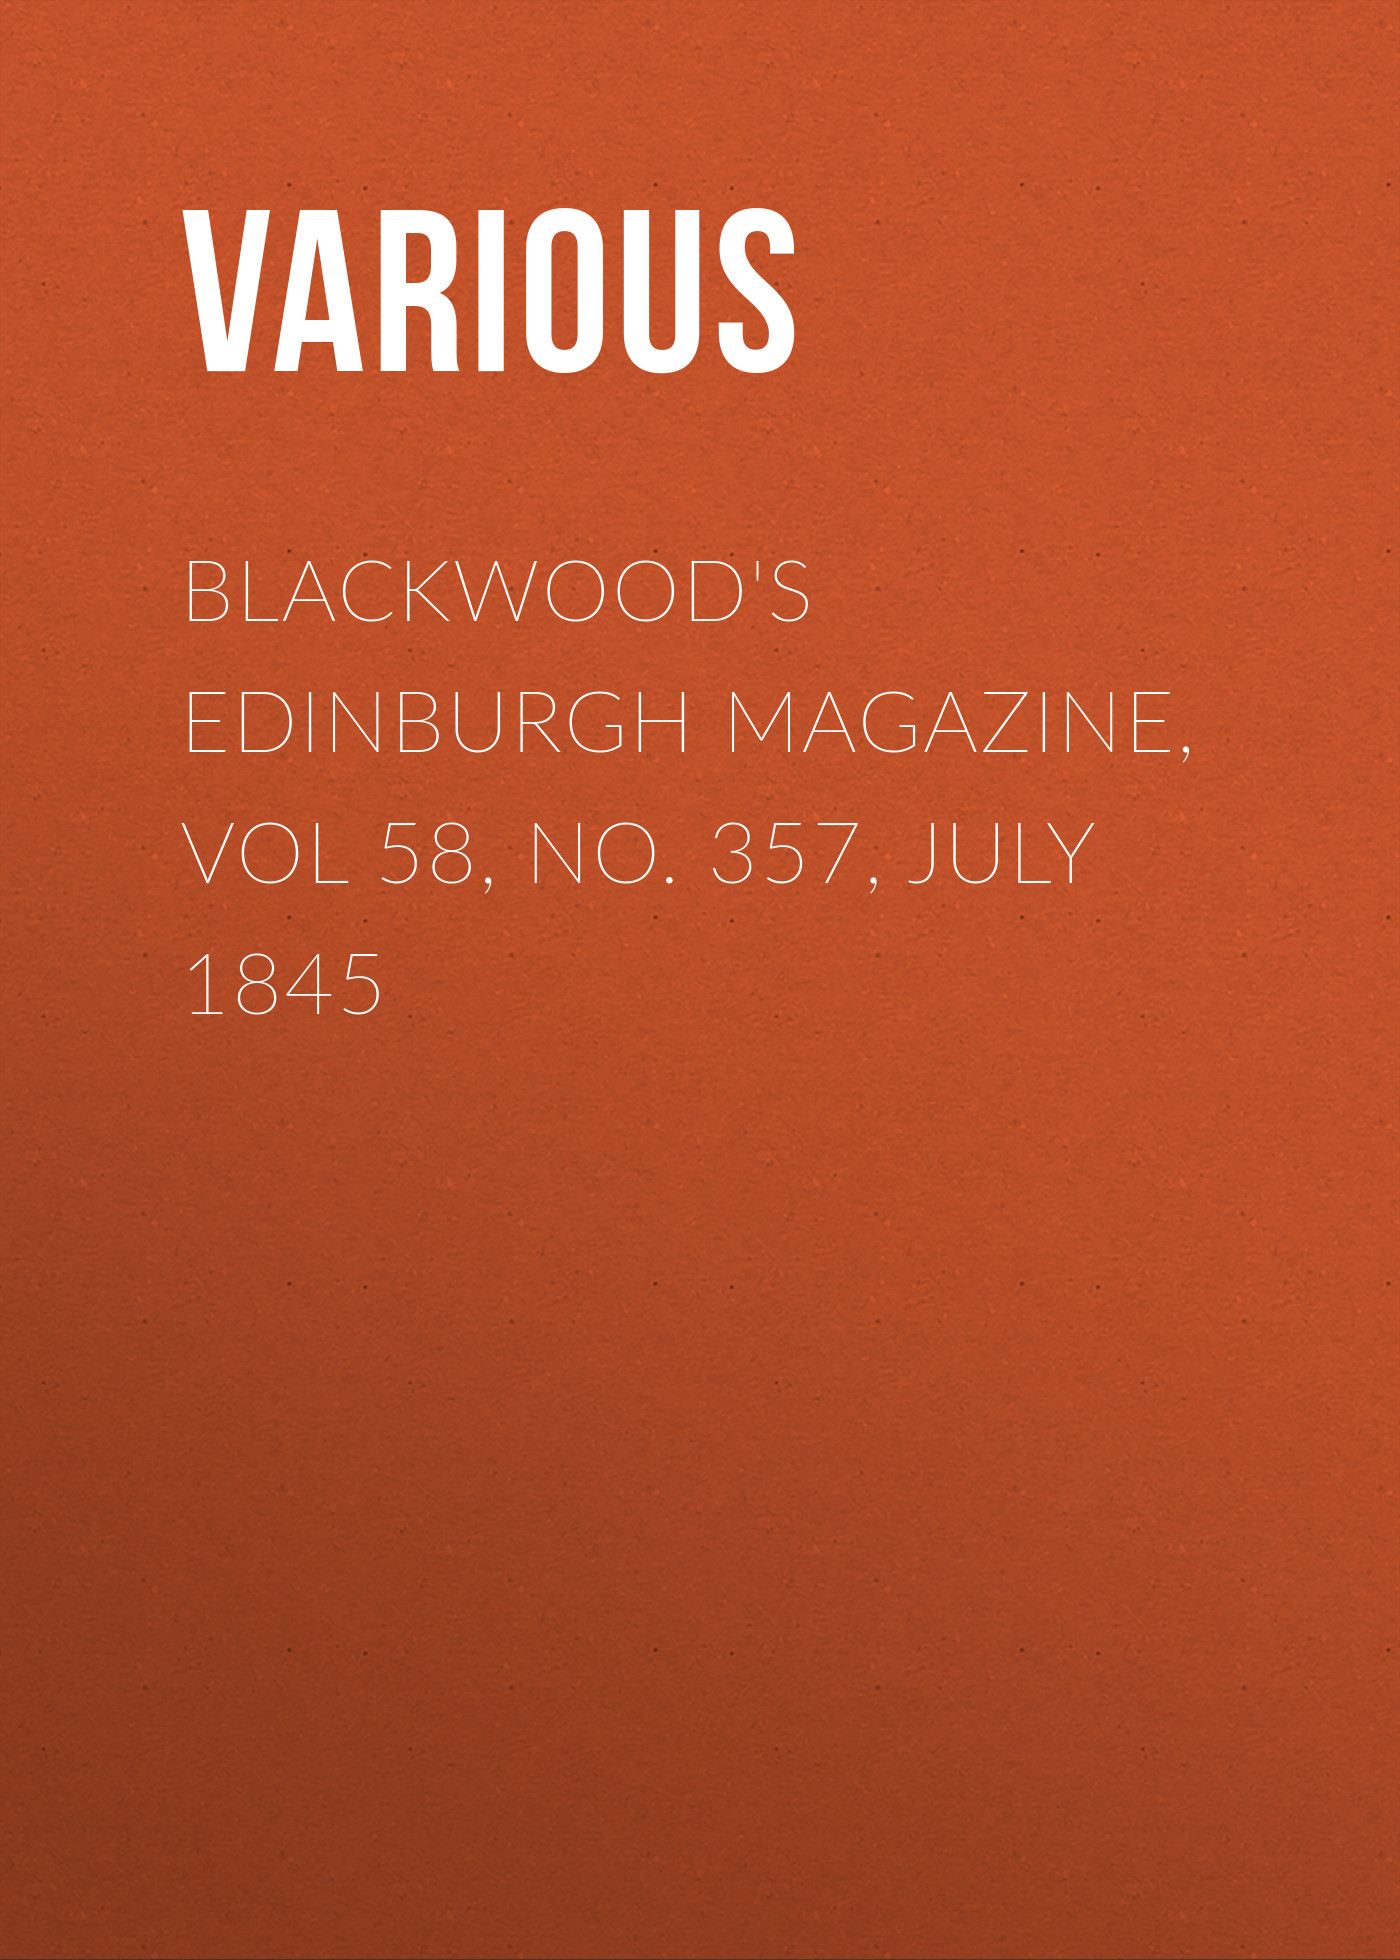 Книга Blackwood's Edinburgh Magazine, Vol 58, No. 357, July 1845 из серии , созданная  Various, может относится к жанру Журналы, Зарубежная образовательная литература, Книги о Путешествиях. Стоимость электронной книги Blackwood's Edinburgh Magazine, Vol 58, No. 357, July 1845 с идентификатором 25568679 составляет 0 руб.